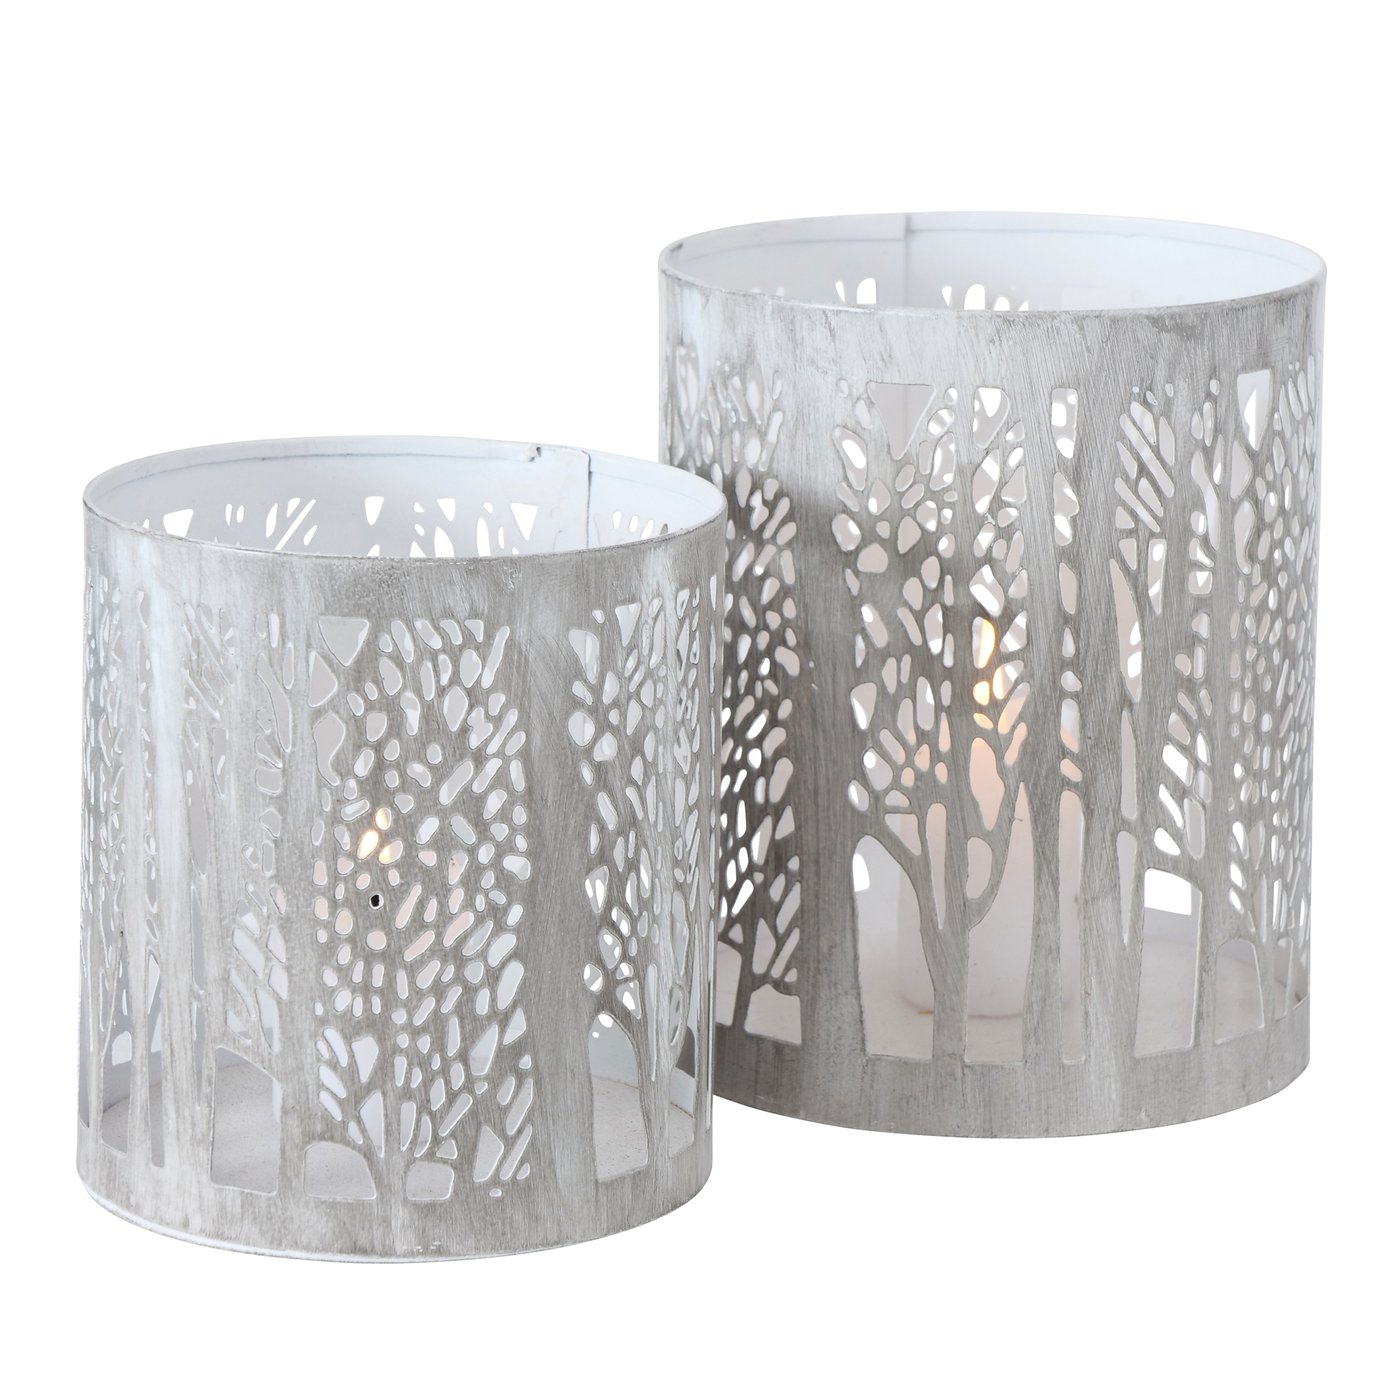 Metall Windlicht mit Bäumen "Afers" hellgrau weiß 2er Set - H10-13cm, 2015409, 4020607938847, Lanhausdekoration